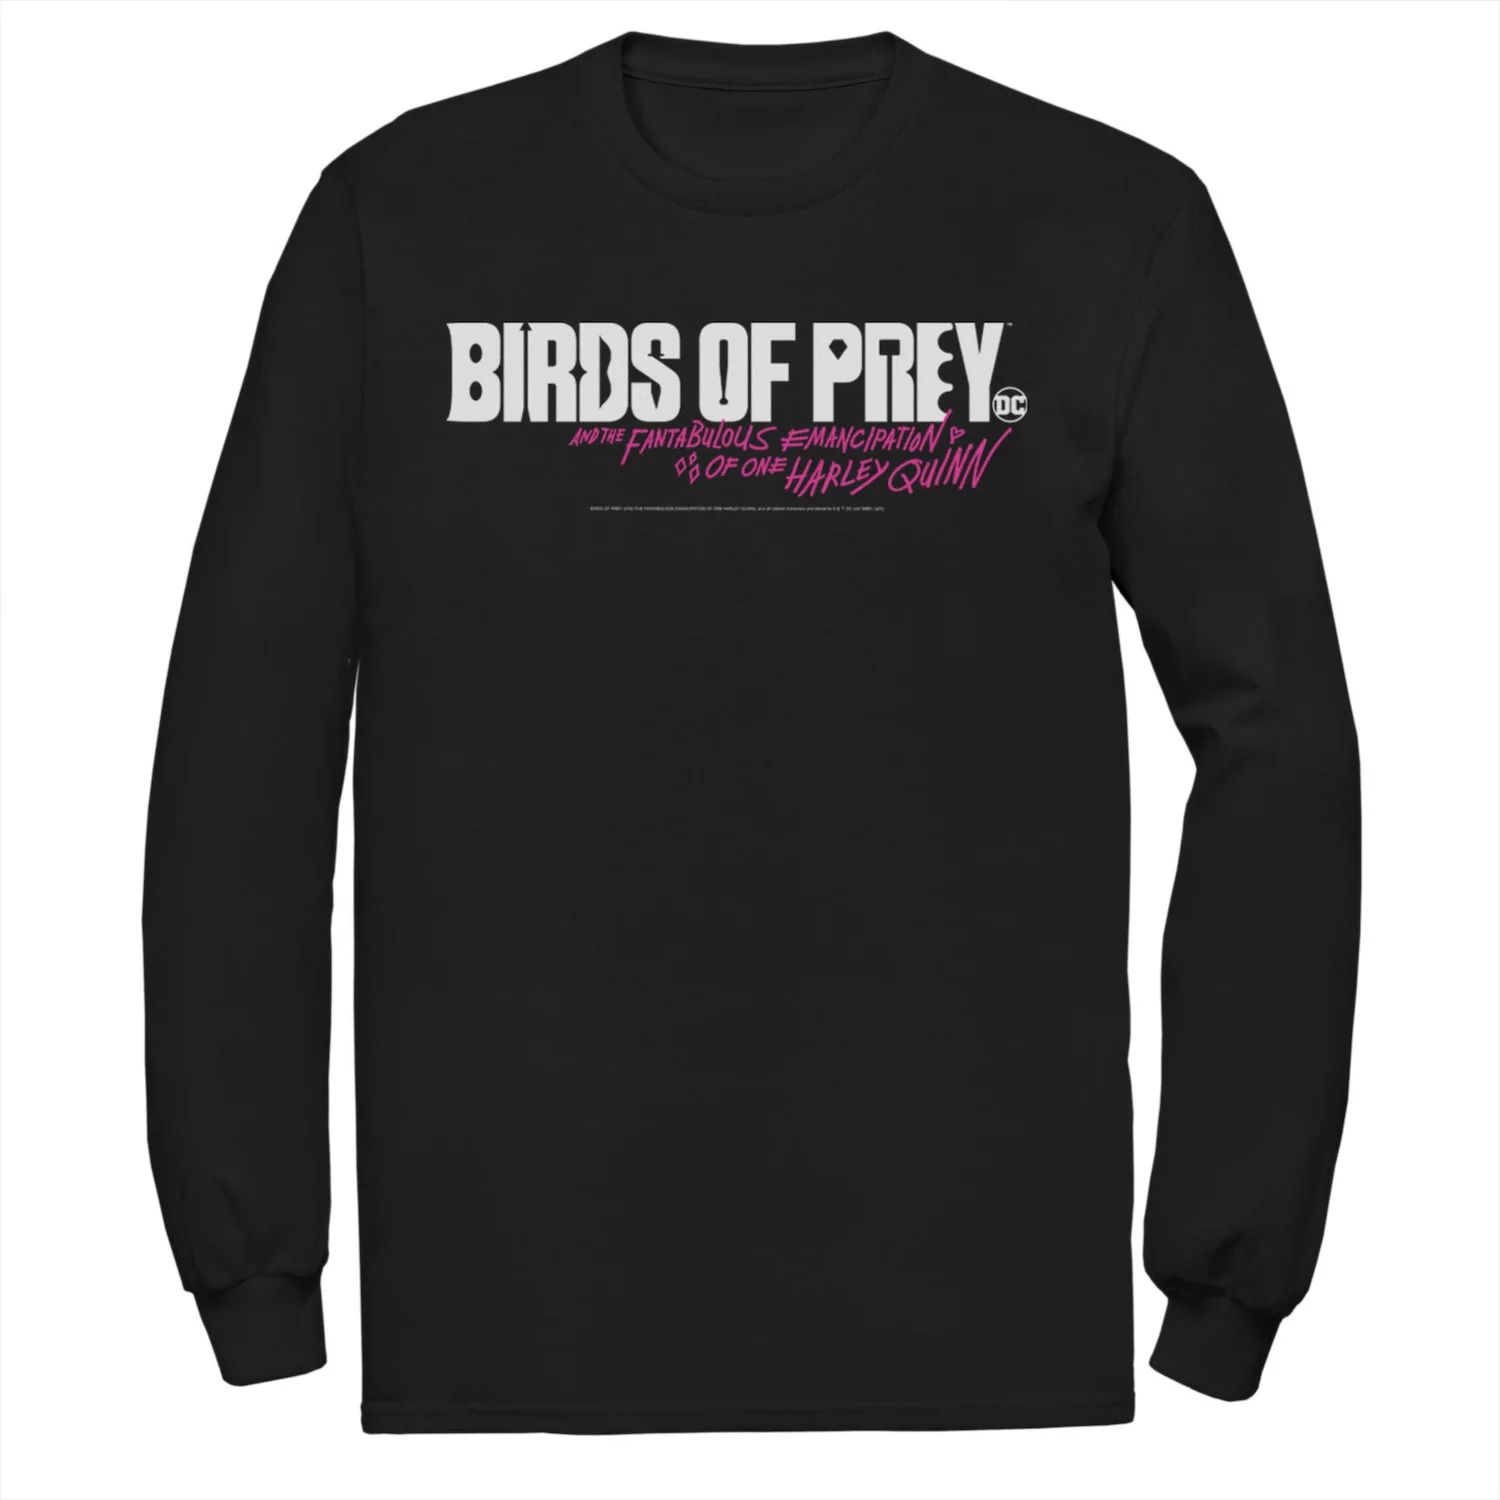 Мужская футболка с простым текстовым логотипом «Хищные птицы» DC Comics наклейка патч для одежды dc хищные птицы 2